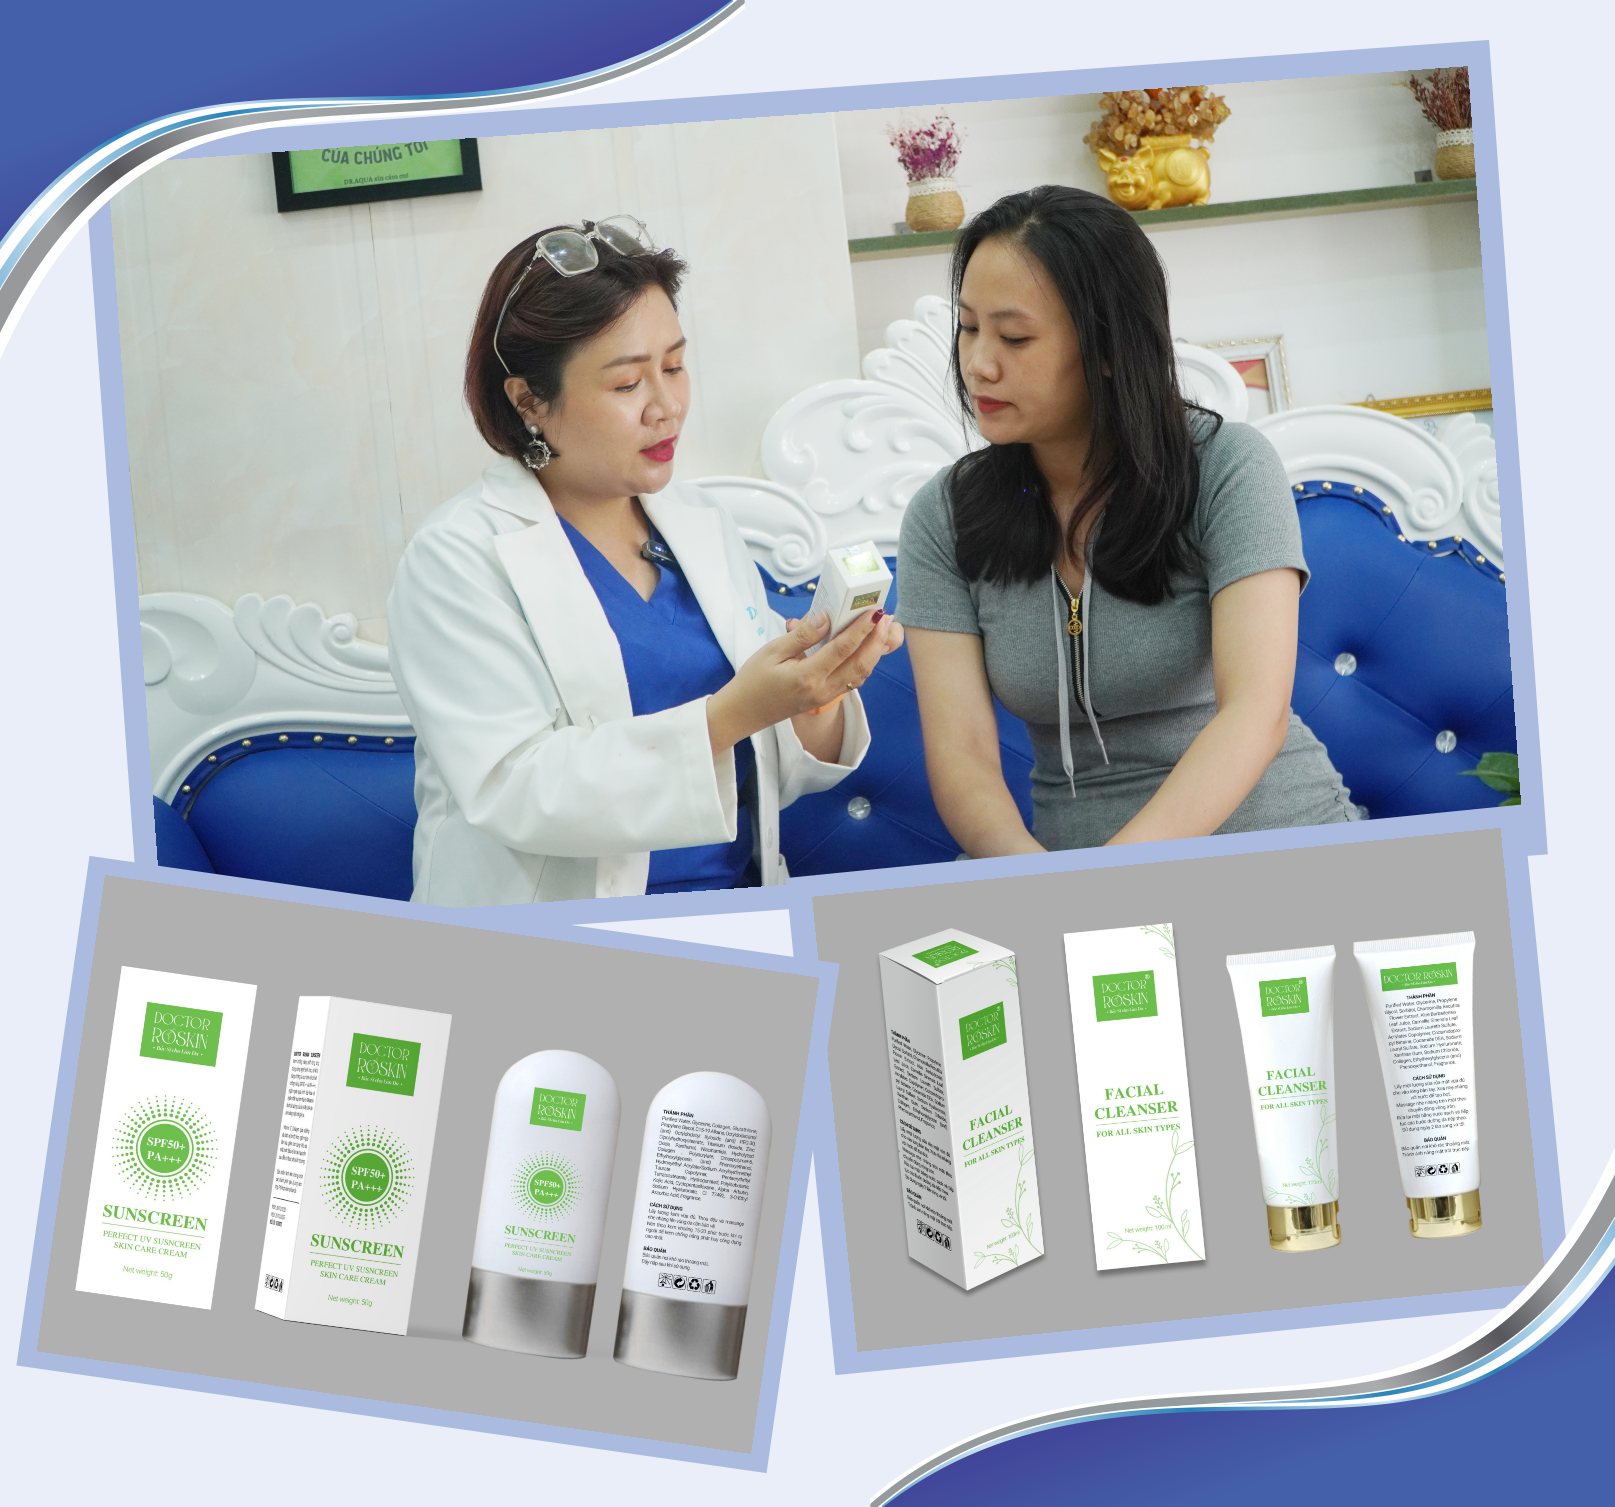 Bộ sản phẩm chăm sóc và điều trị da Doctor Roskin phù hợp với làn da phụ nữ Việt. Ảnh: PHAN VINH